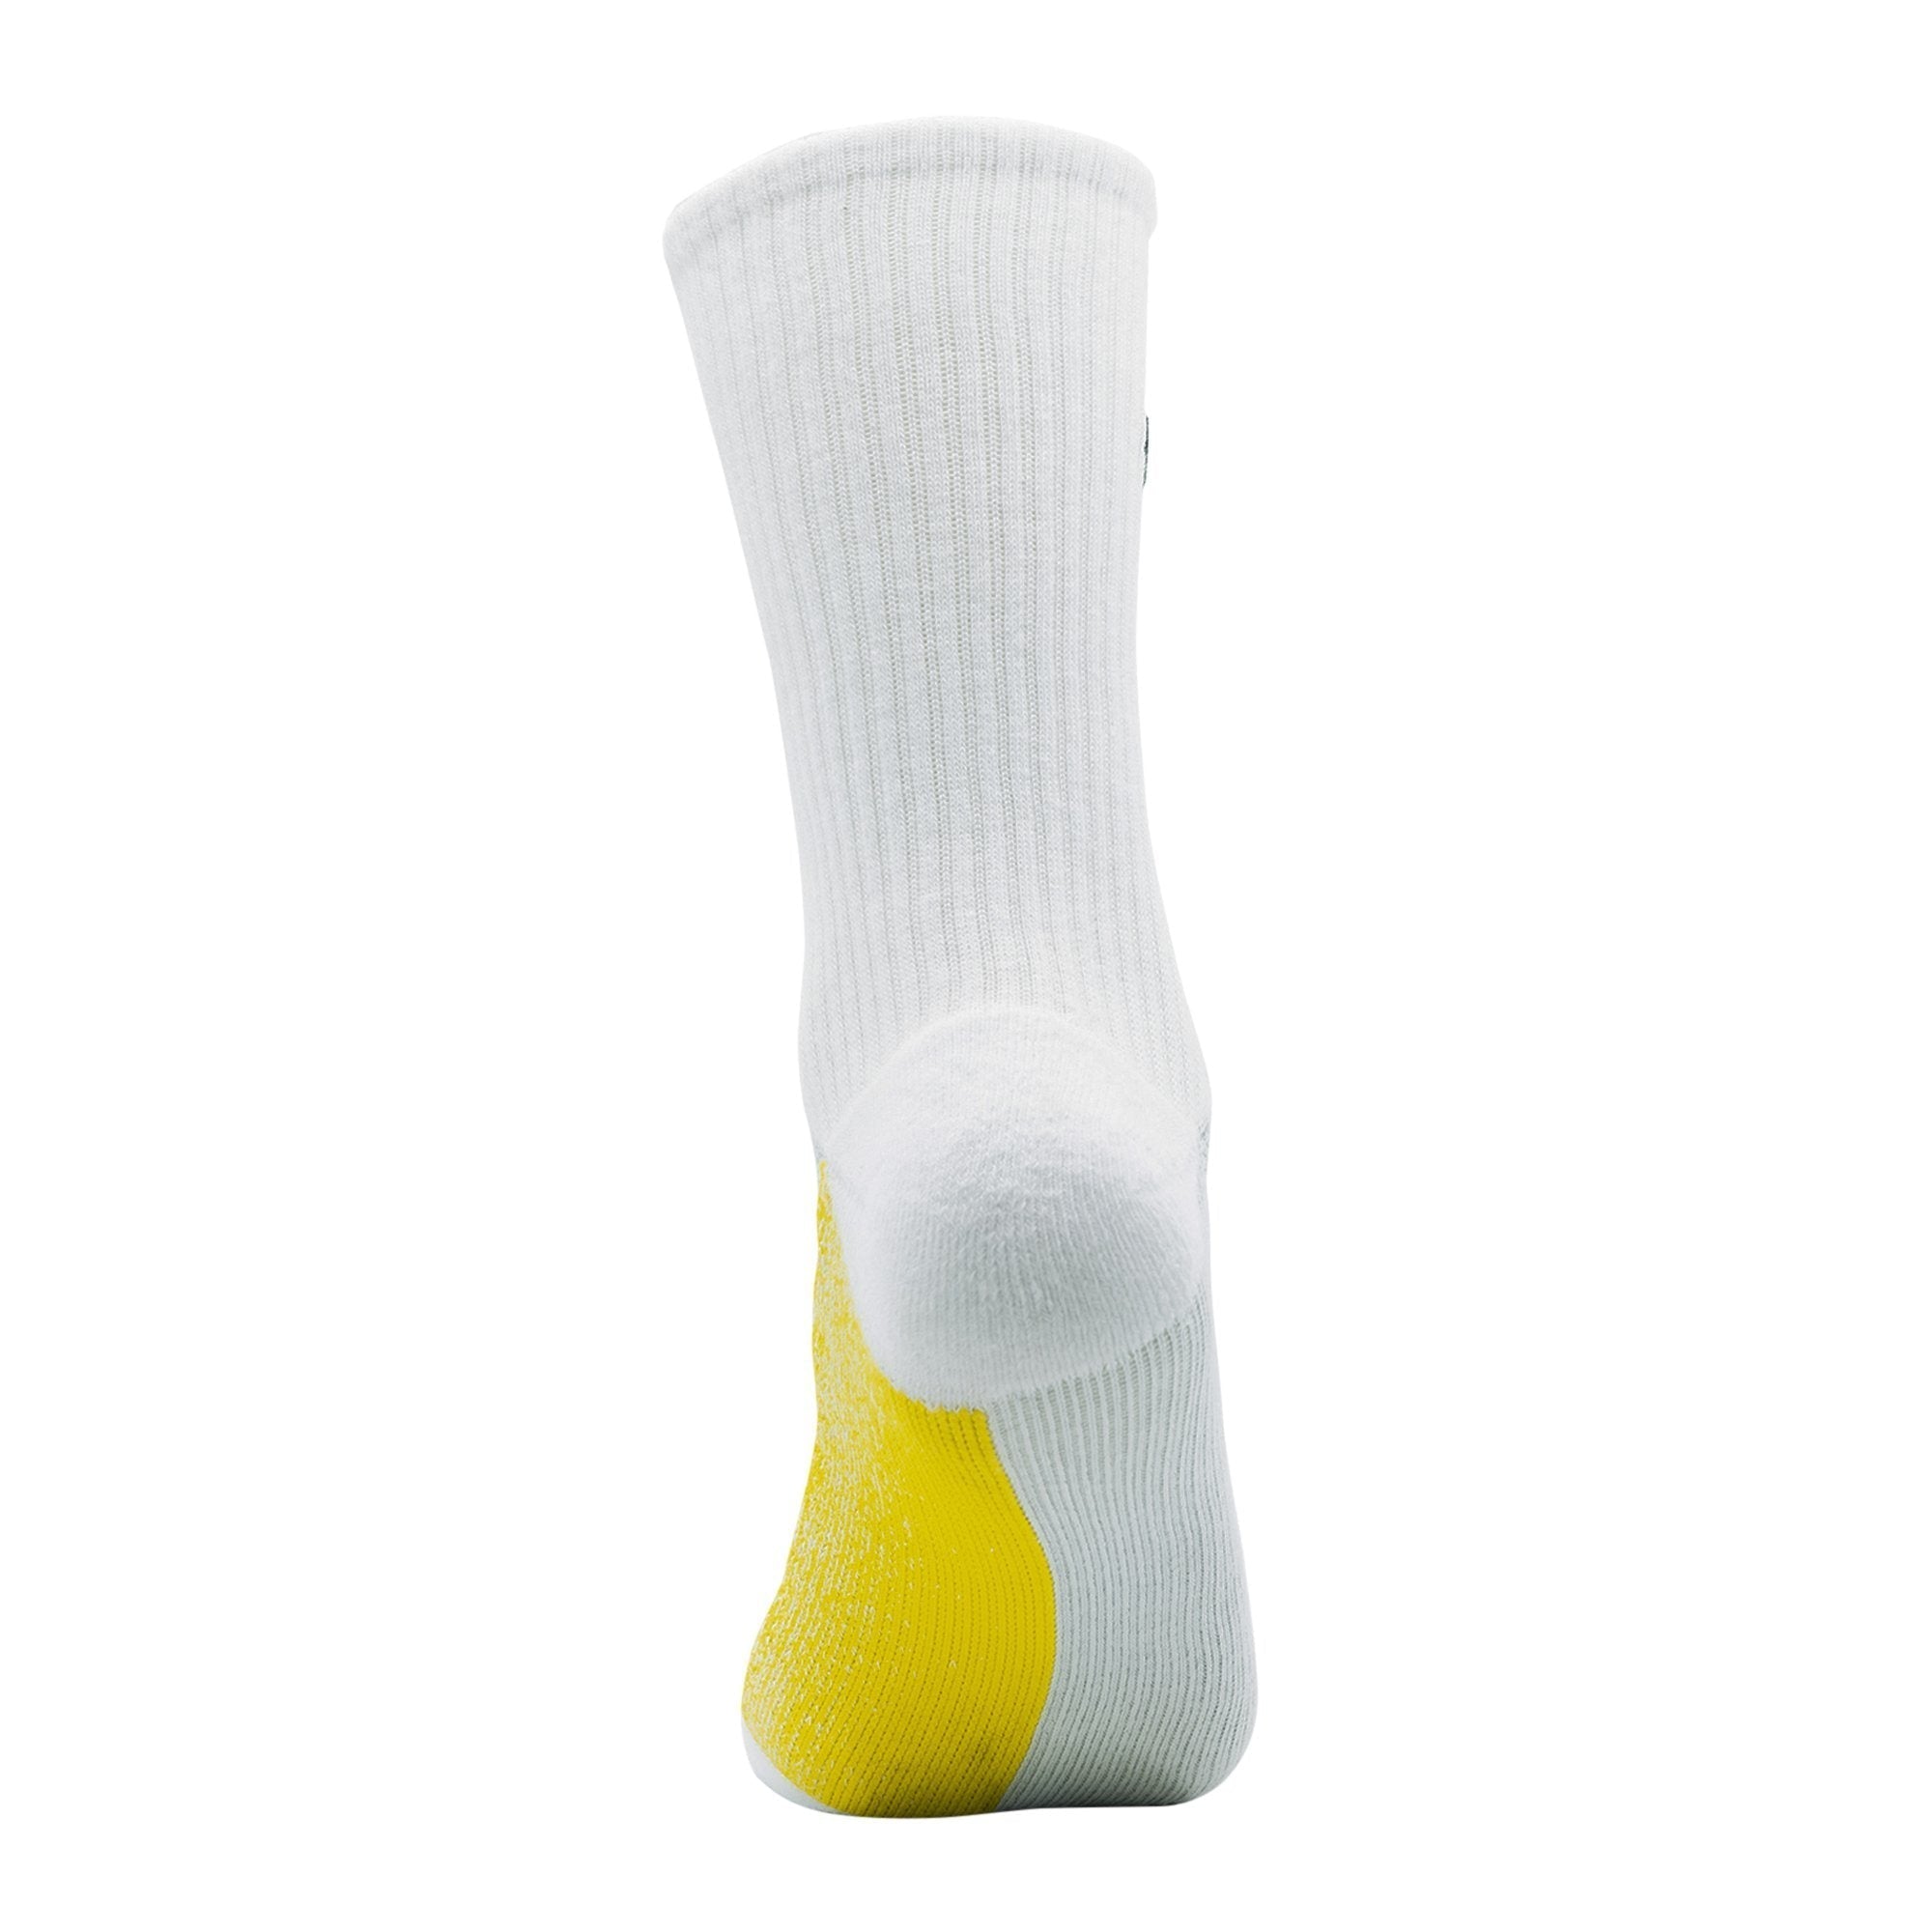 ArchTek® Socks (6 Pack Combo) upsell ArchTek 